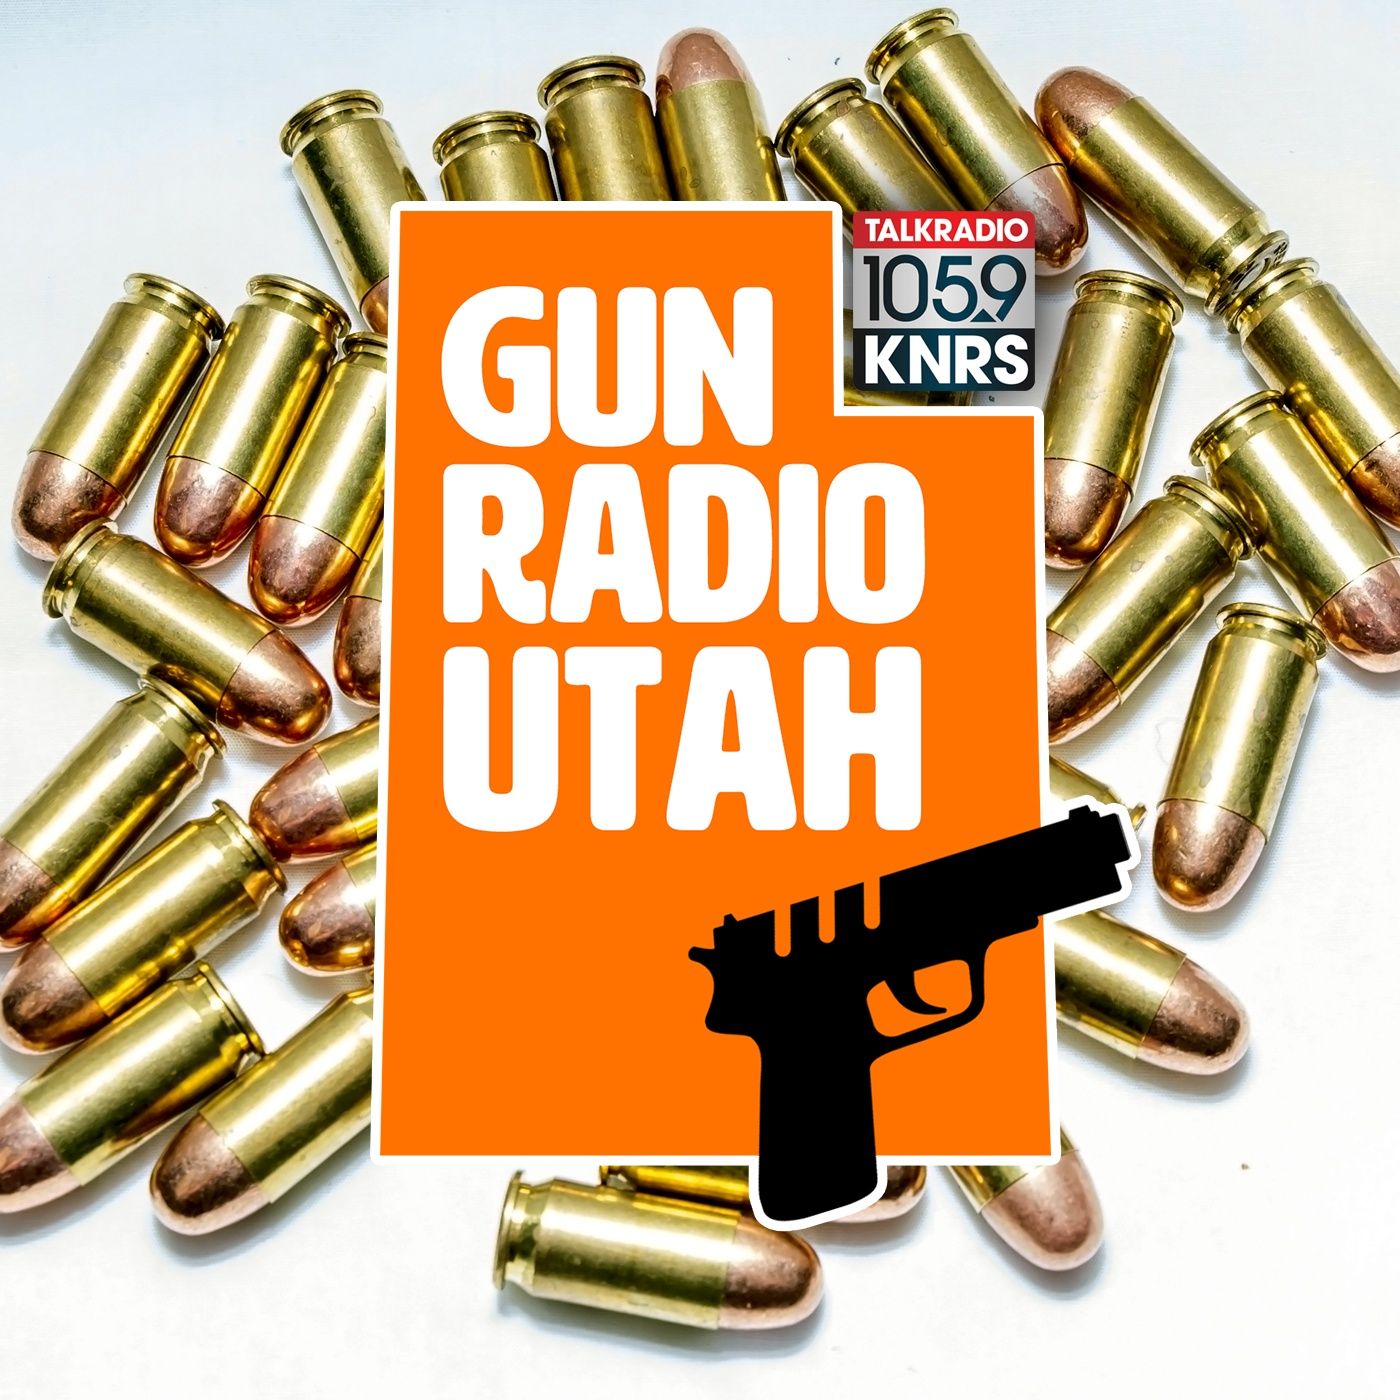 Gun Radio Utah